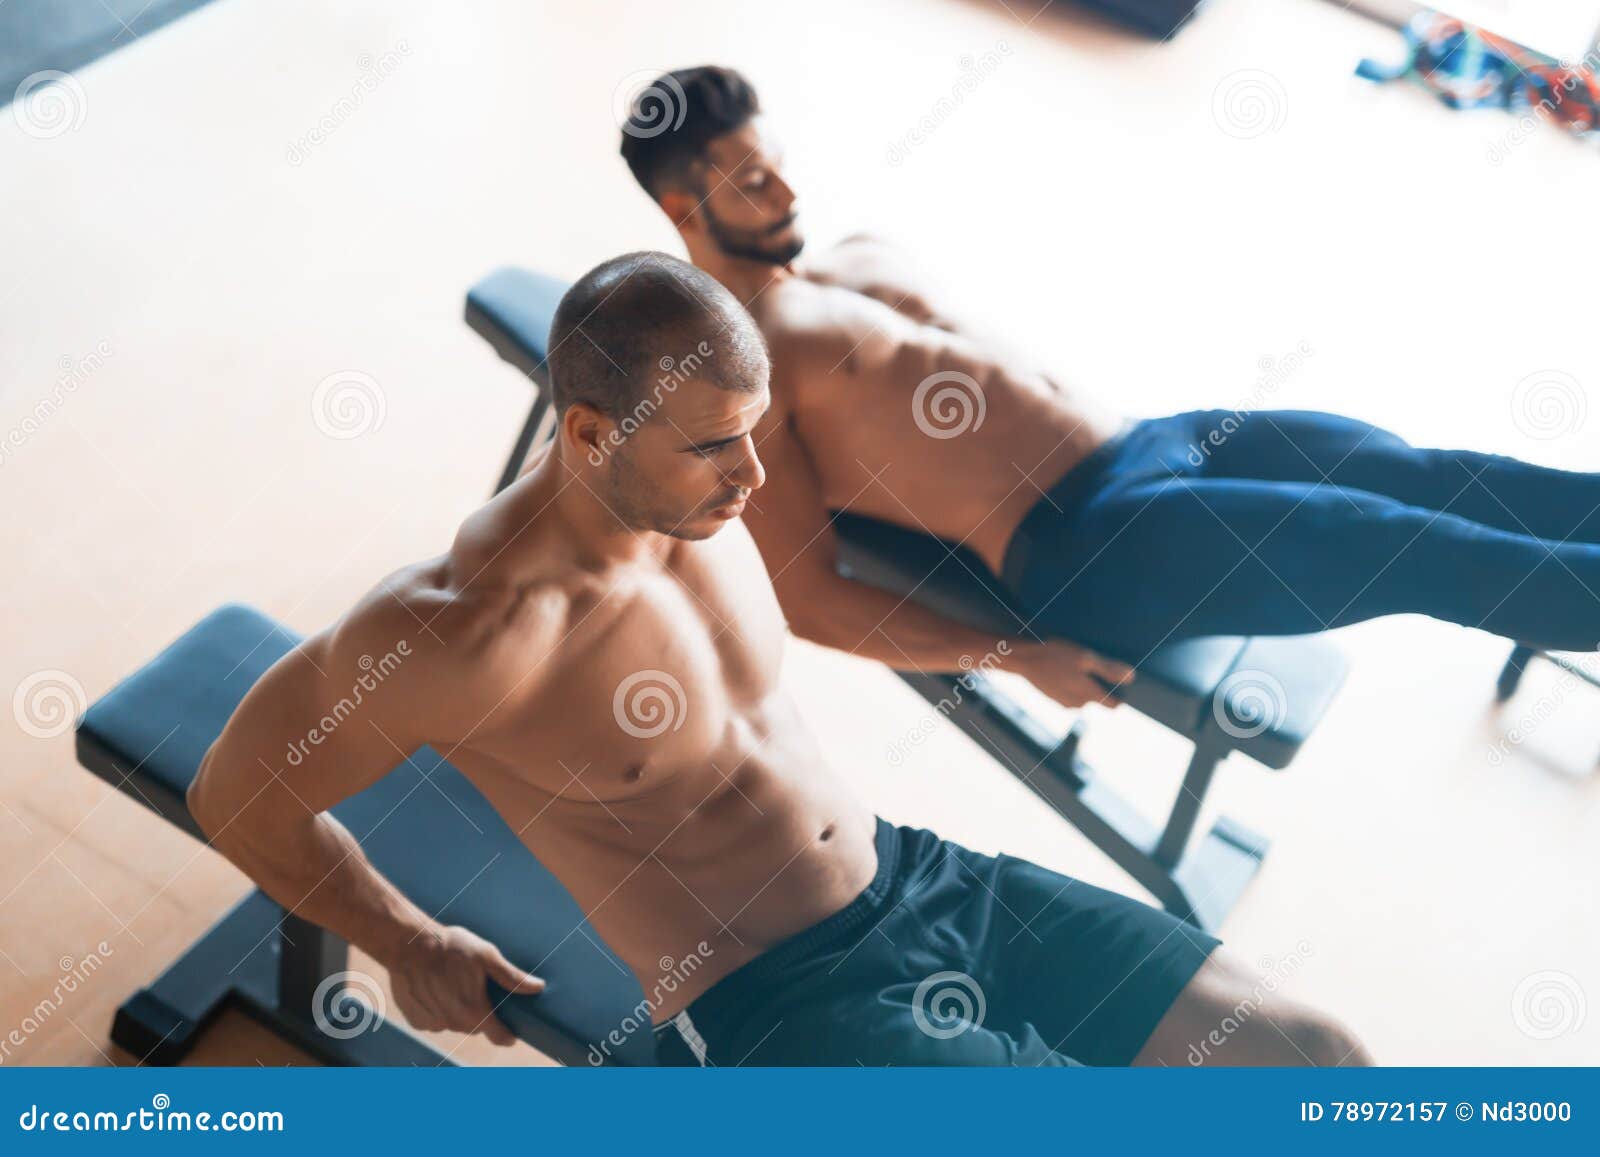 Мужчина занимается с парнем. Два парня в спортзале. Парень в спортзале. Два парня в тренажёрном зале. Молодые спортивные мальчики.